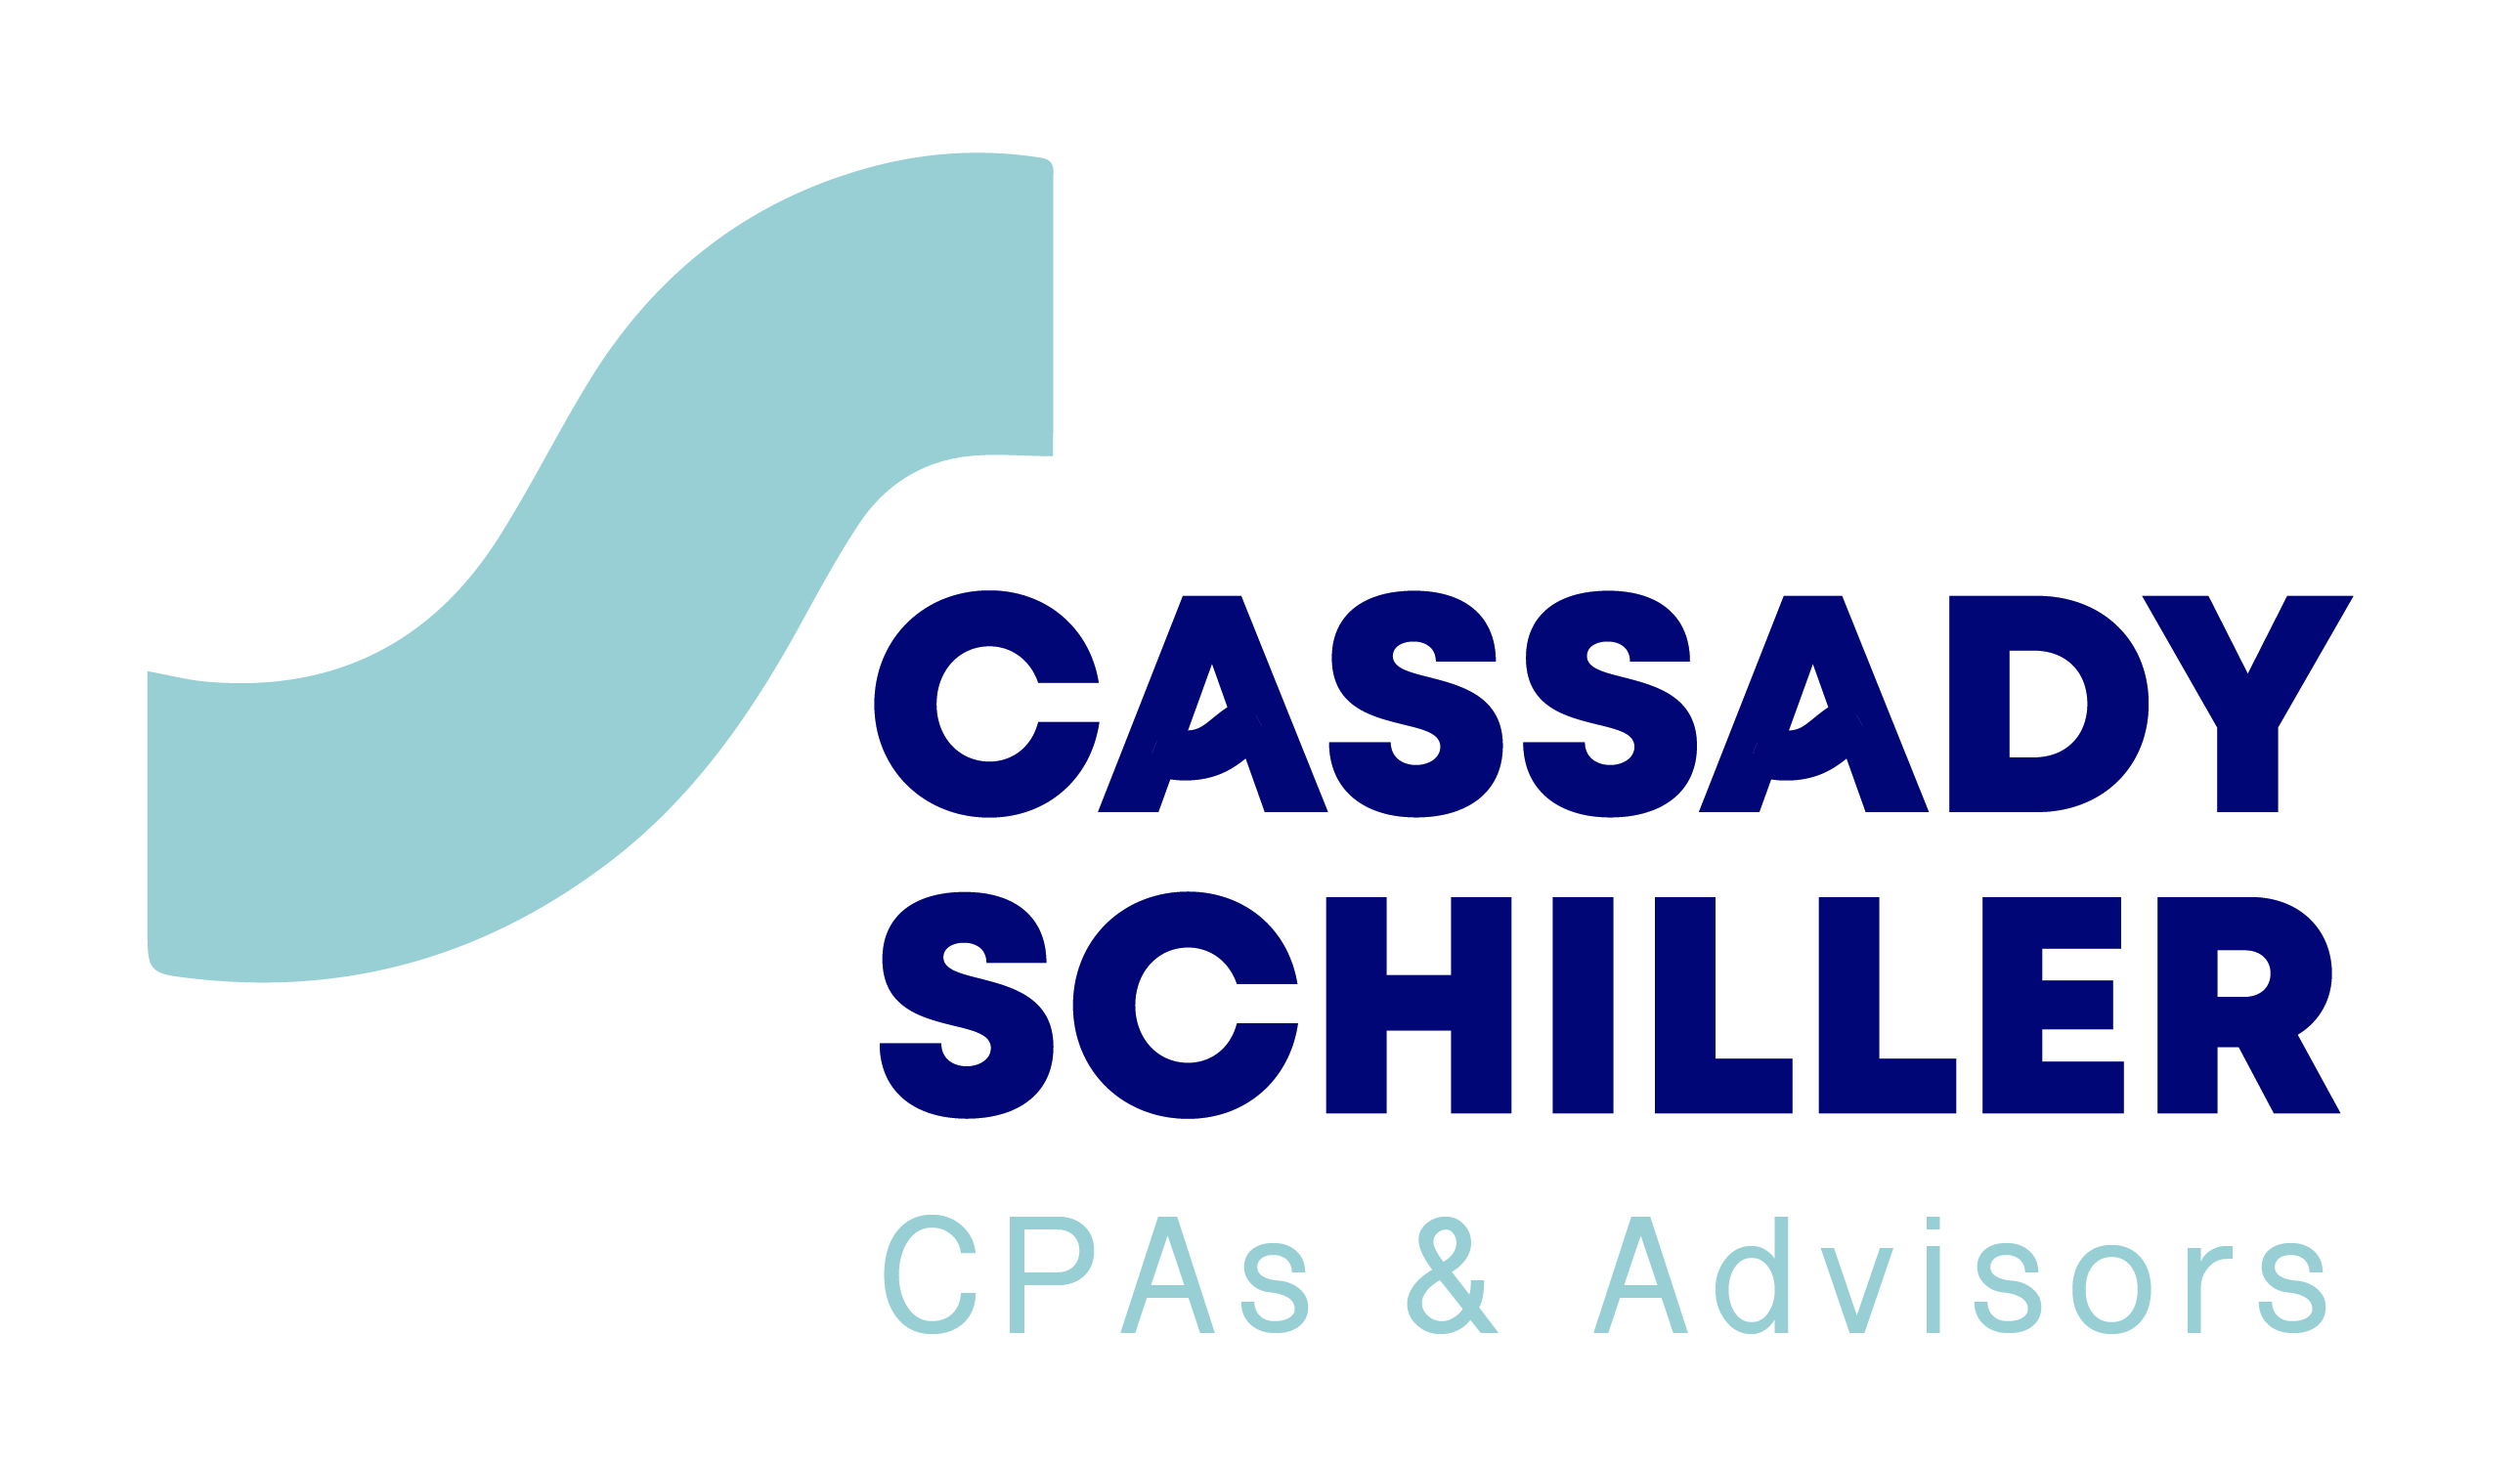 Cassady Schiller CPAs & Advisors